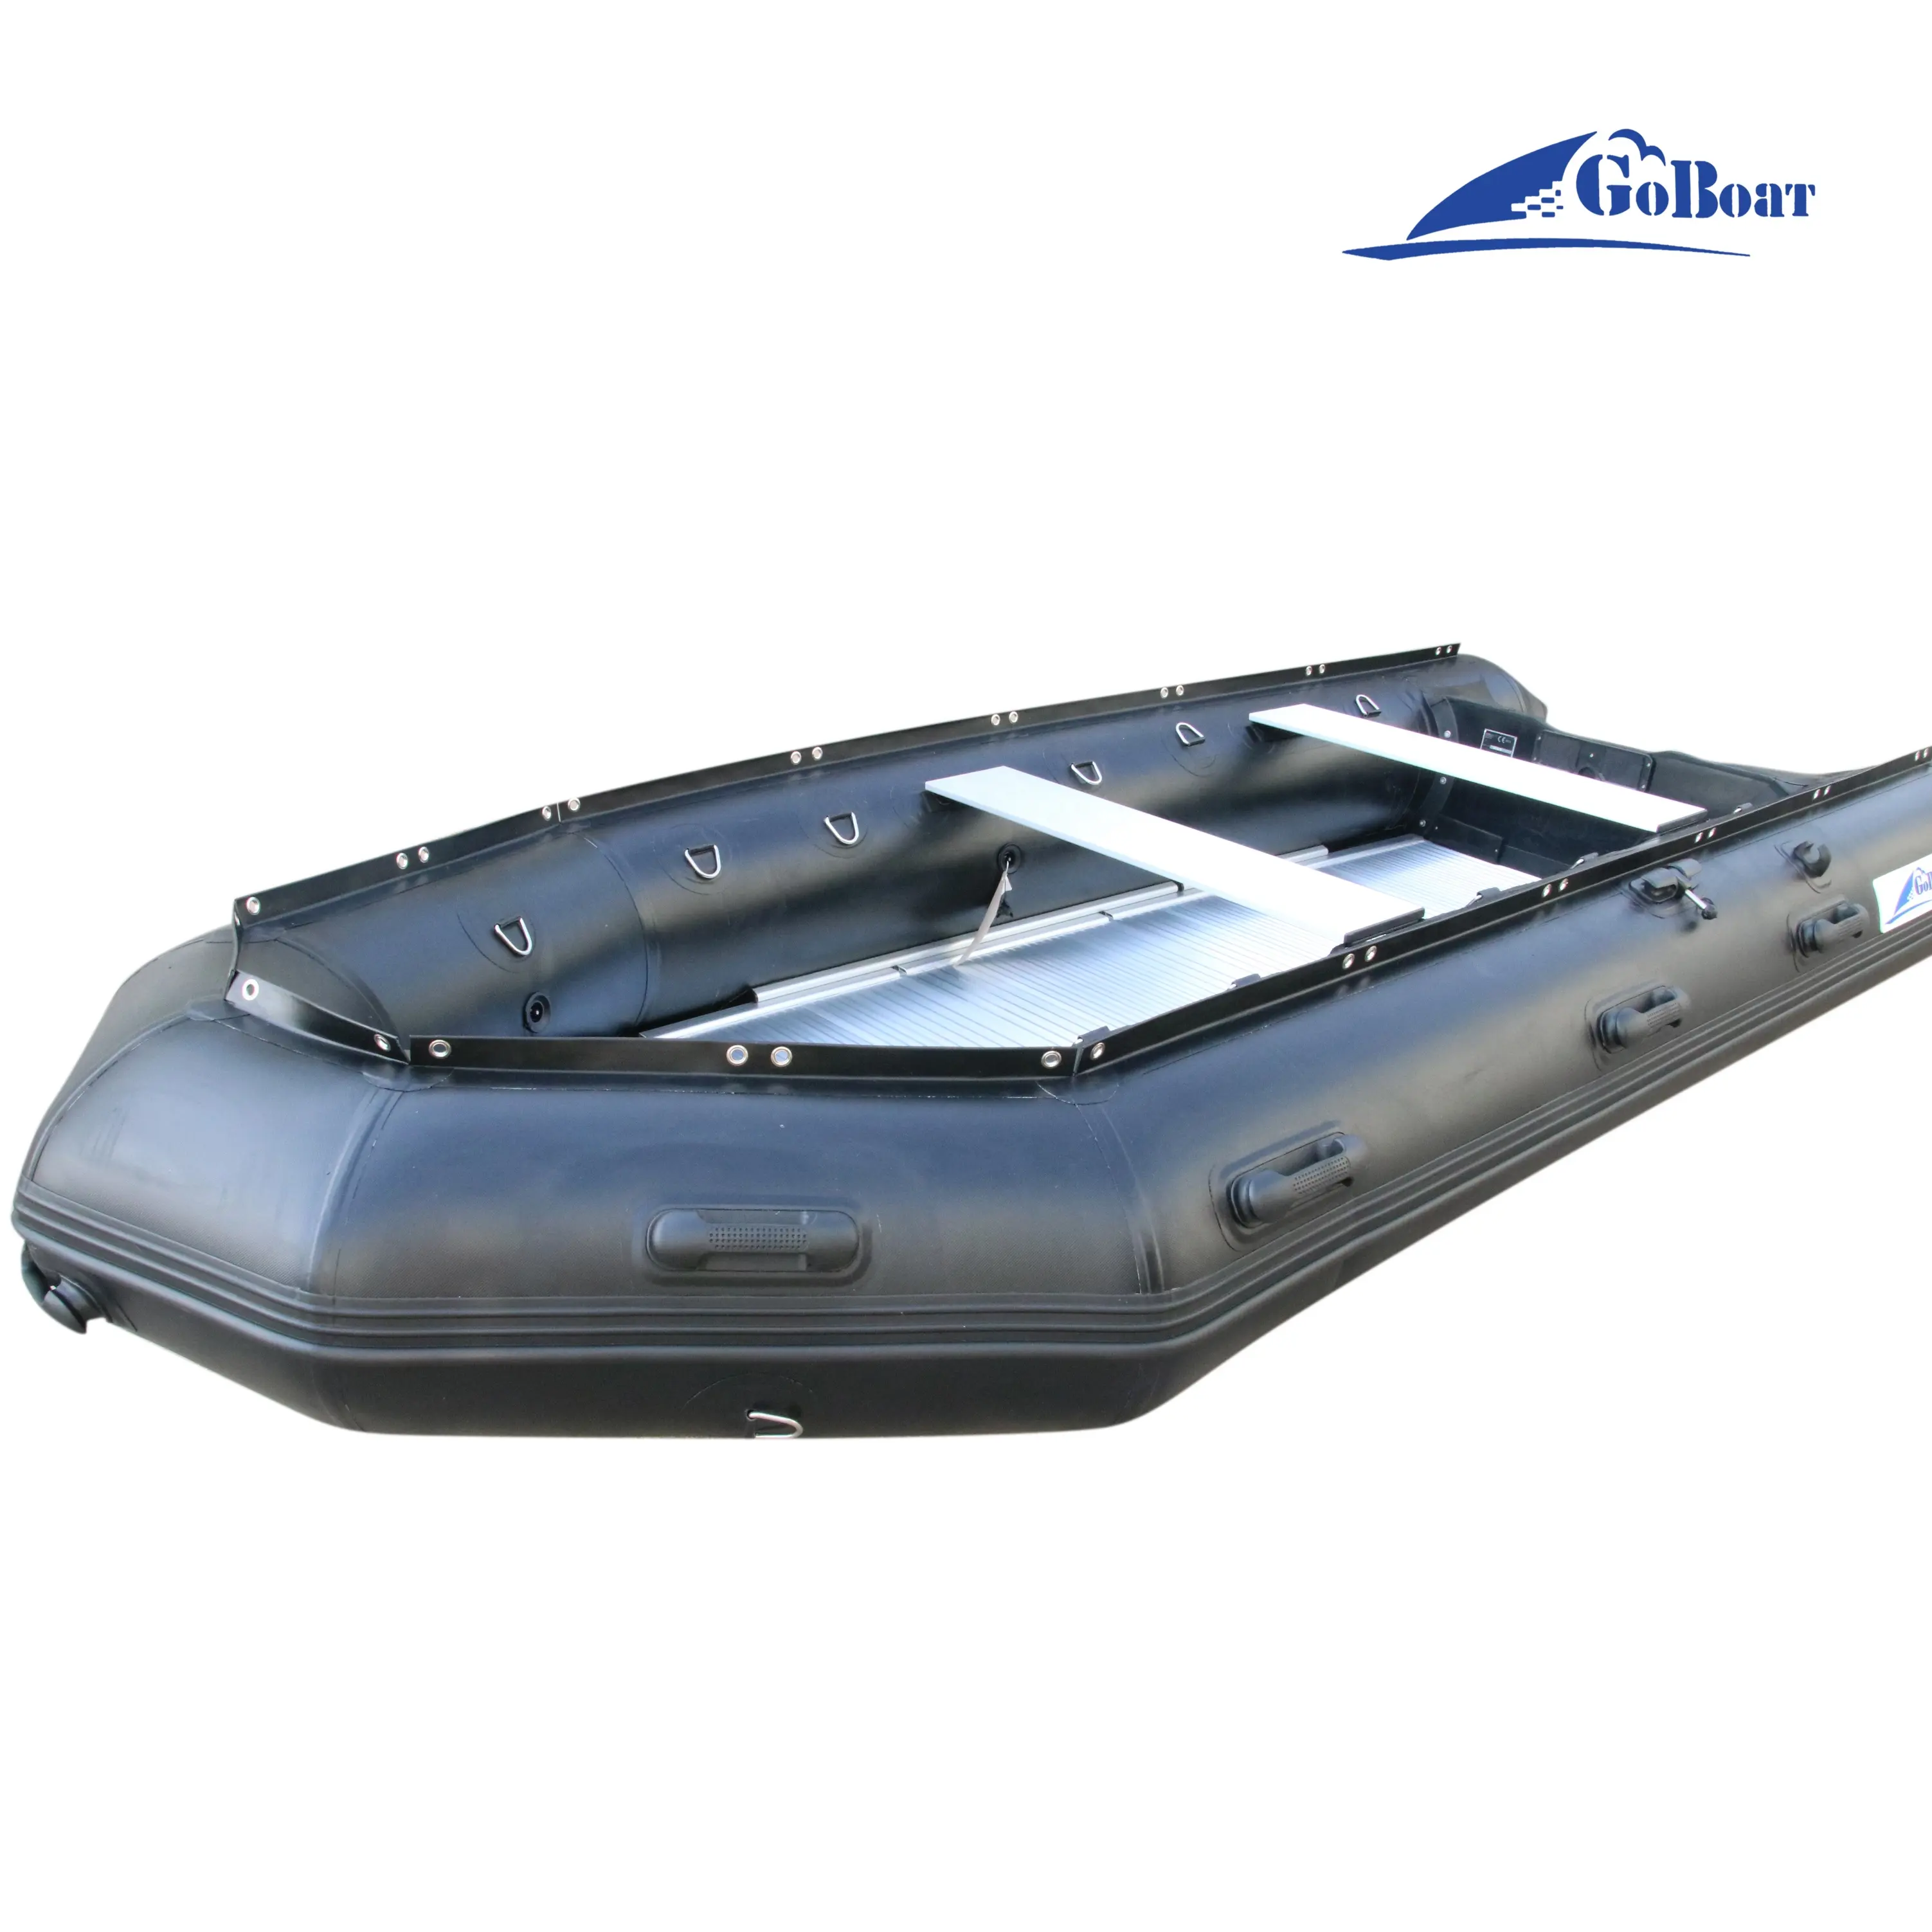 Goethe 430cm GTS430 14ft Jet Boat in vendita cina barche in alluminio accessori per Kayak gonfiabili da pesca economici